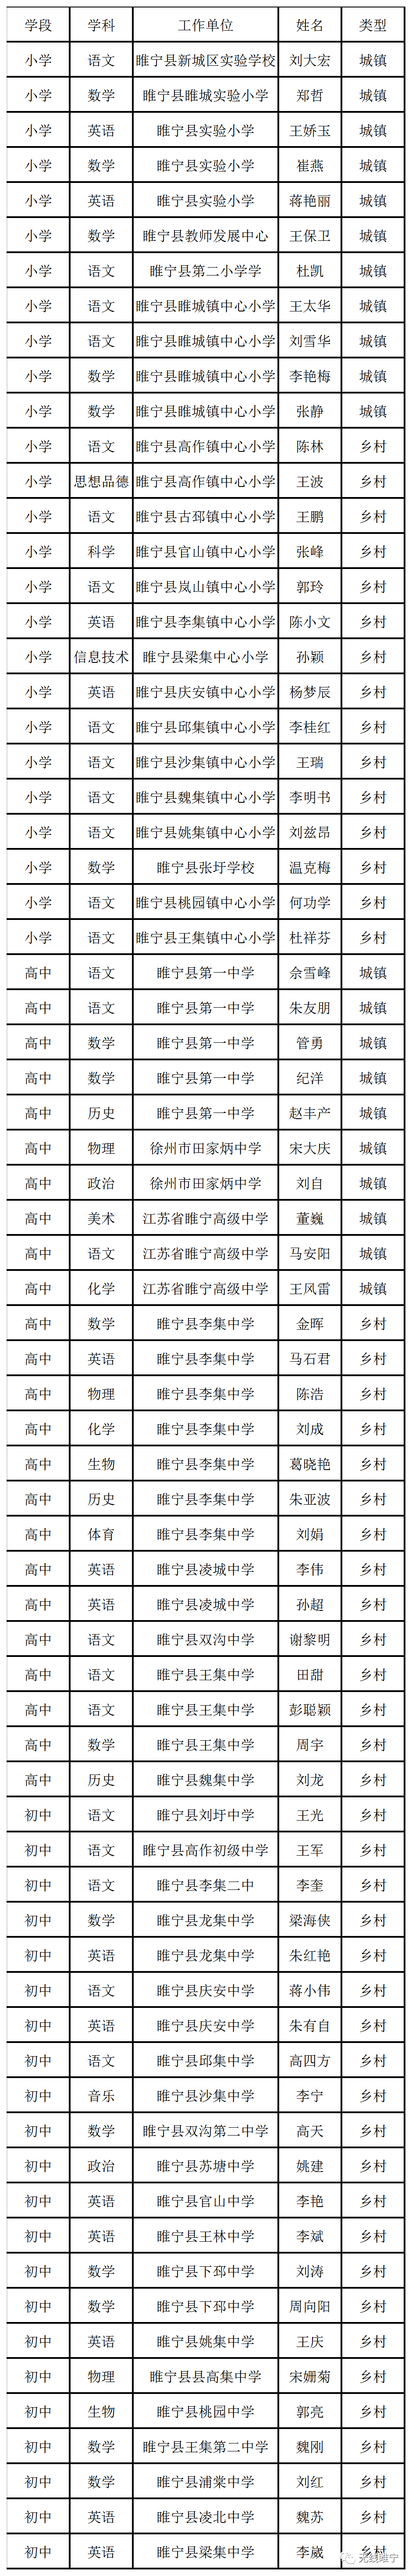 西安海棠学院老师名单图片